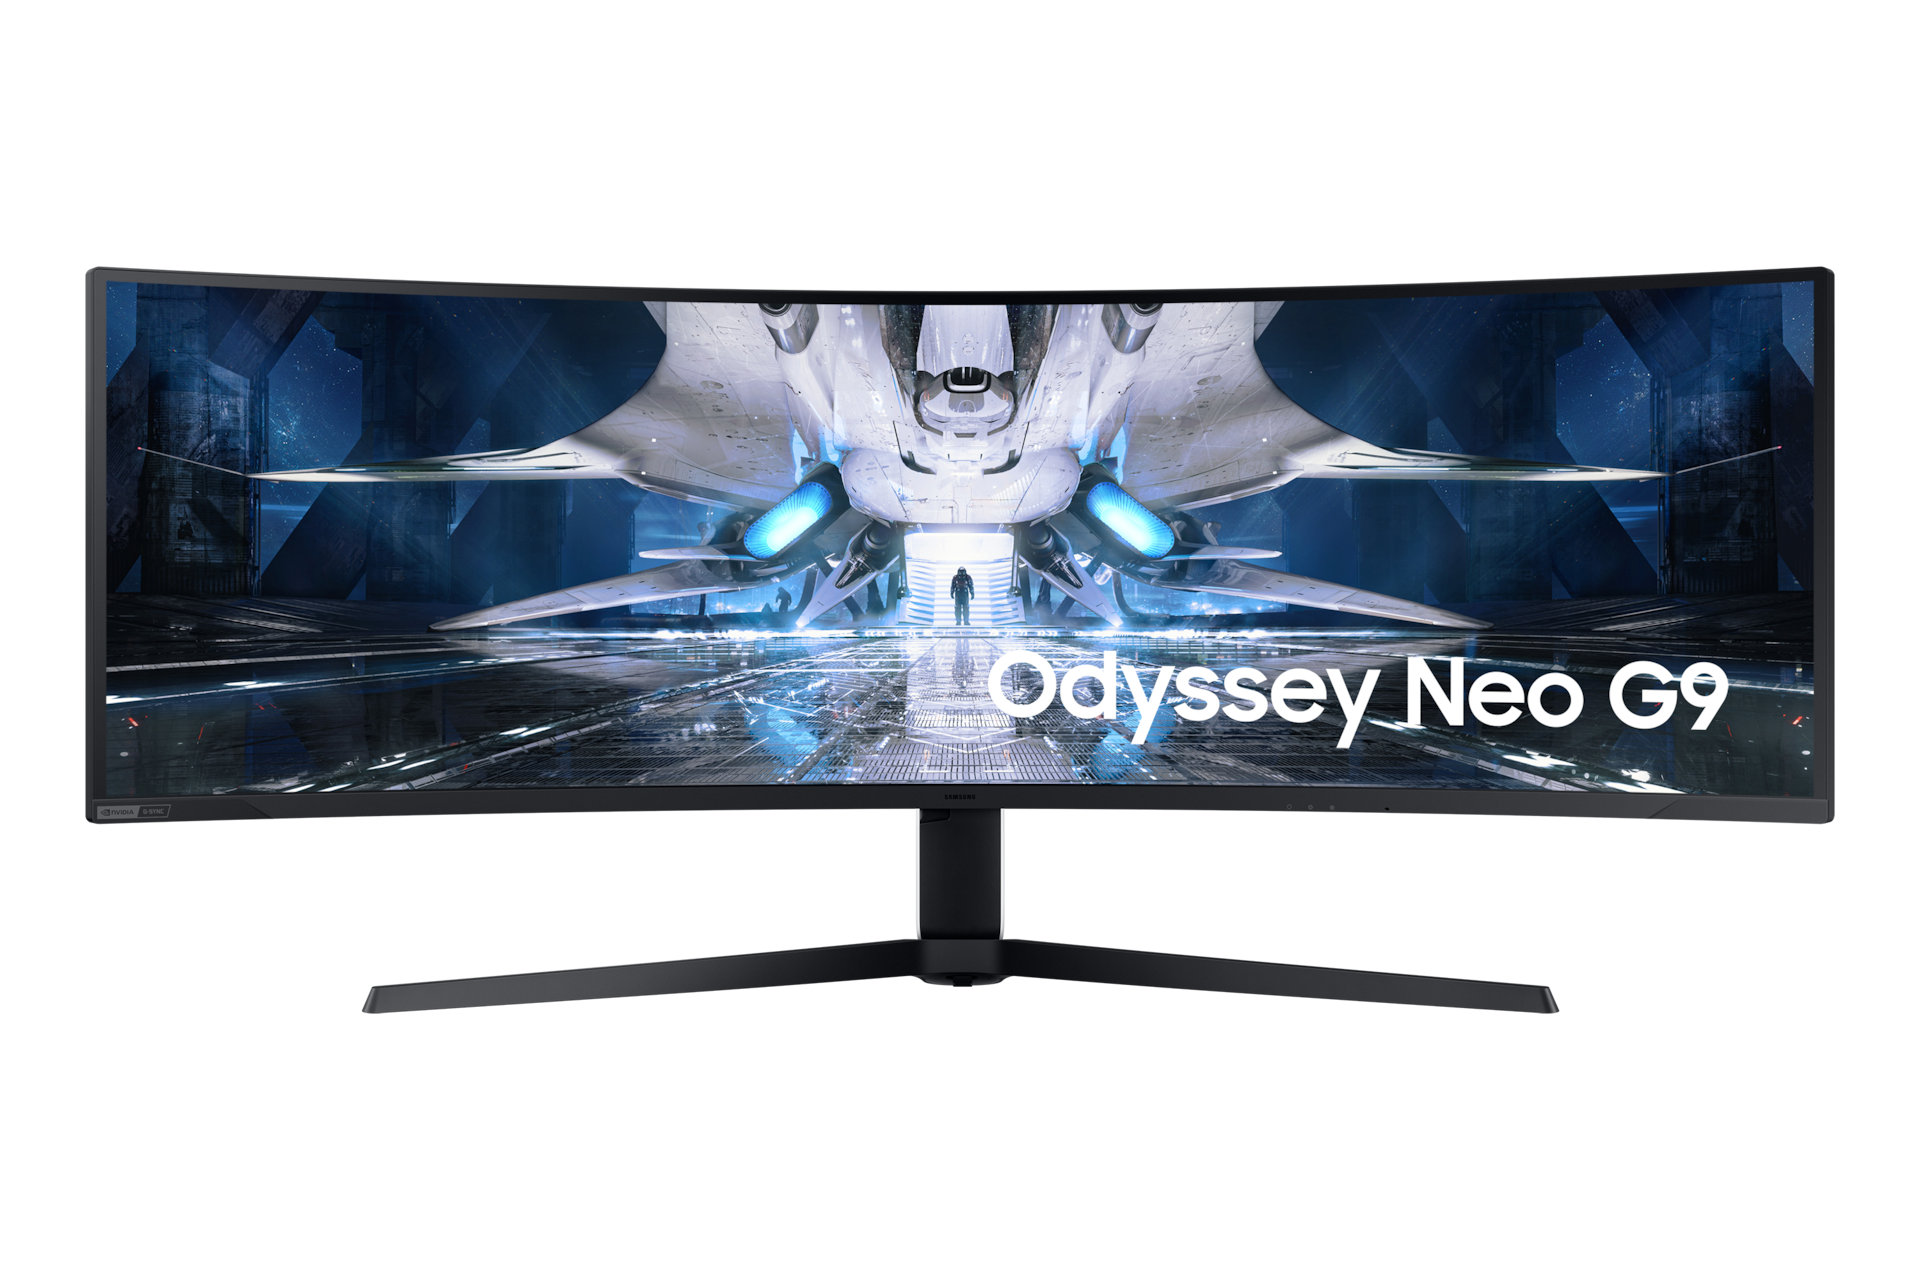 Samsung Odyssey Neo G9 memiliki desain layar lengkung yang memberi bidang pandang luas. Monitor gaming PC lengkung ini dilengkapi sistem speaker internal yang memberikan suara yang kaya dan imersif. 